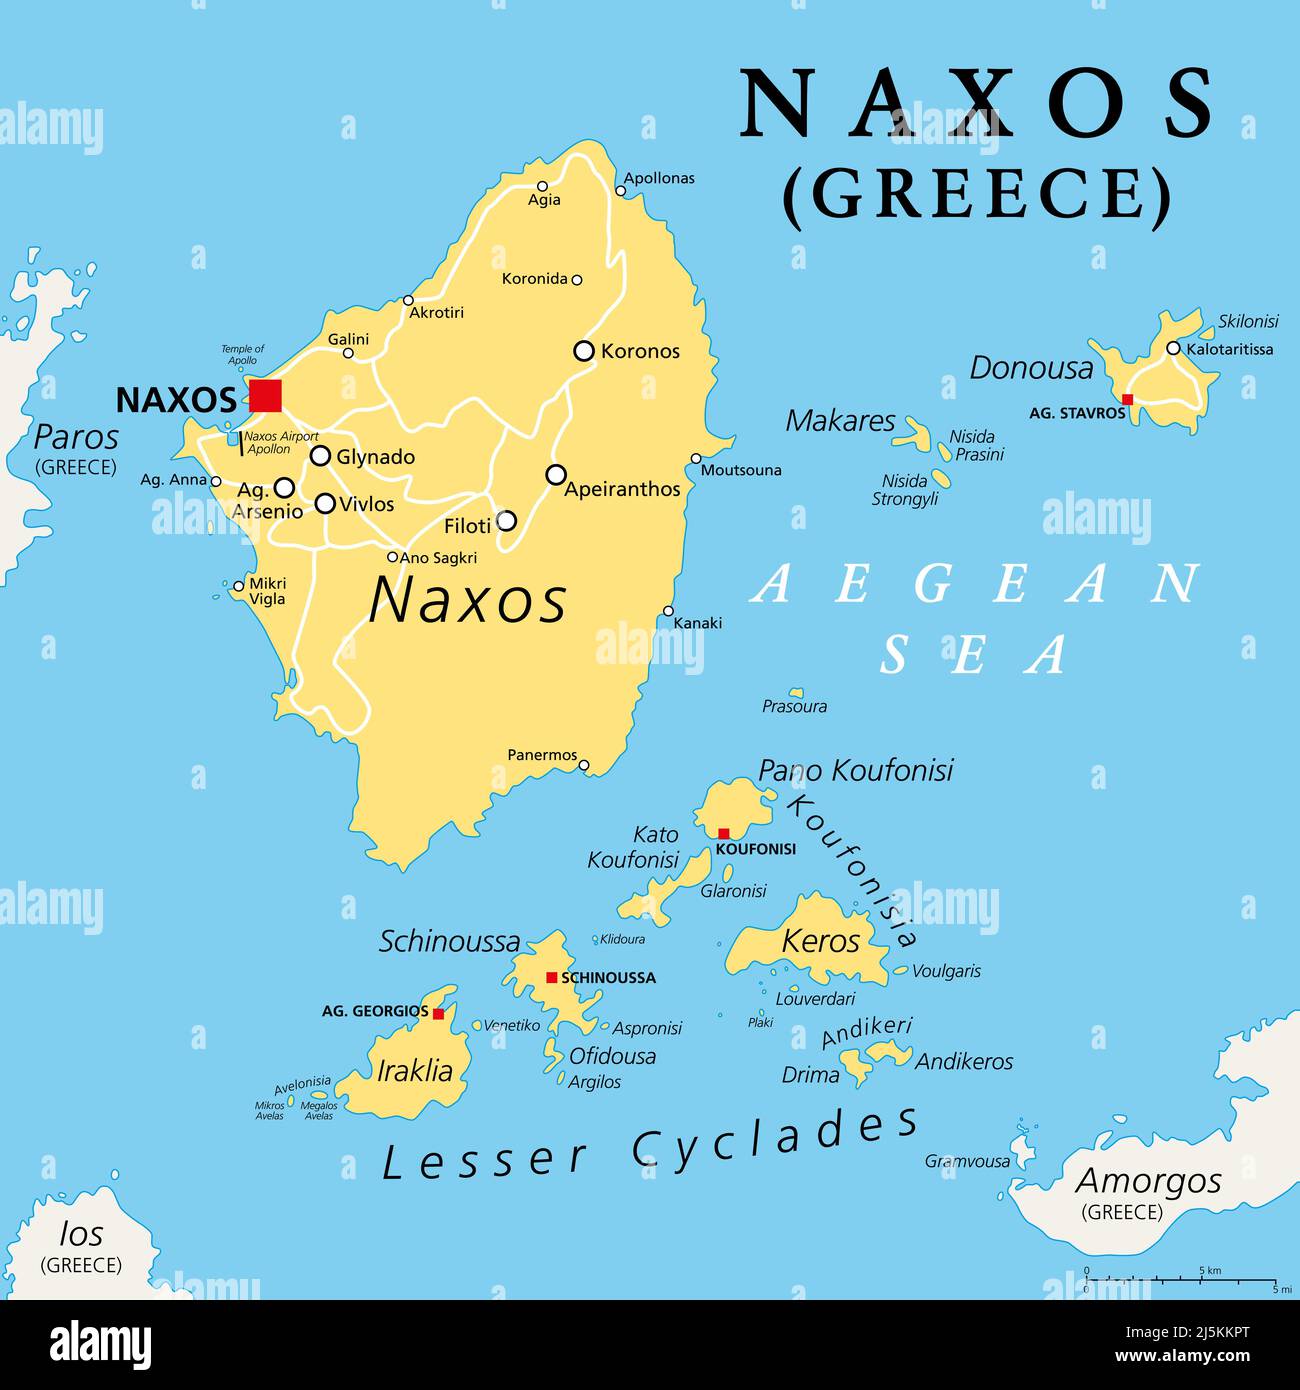 Naxos und kleine Kykladen, griechische Inseln, politische Karte. Inselgruppe in der Ägäis und Teil des Archipels der Kykladen. Stockfoto